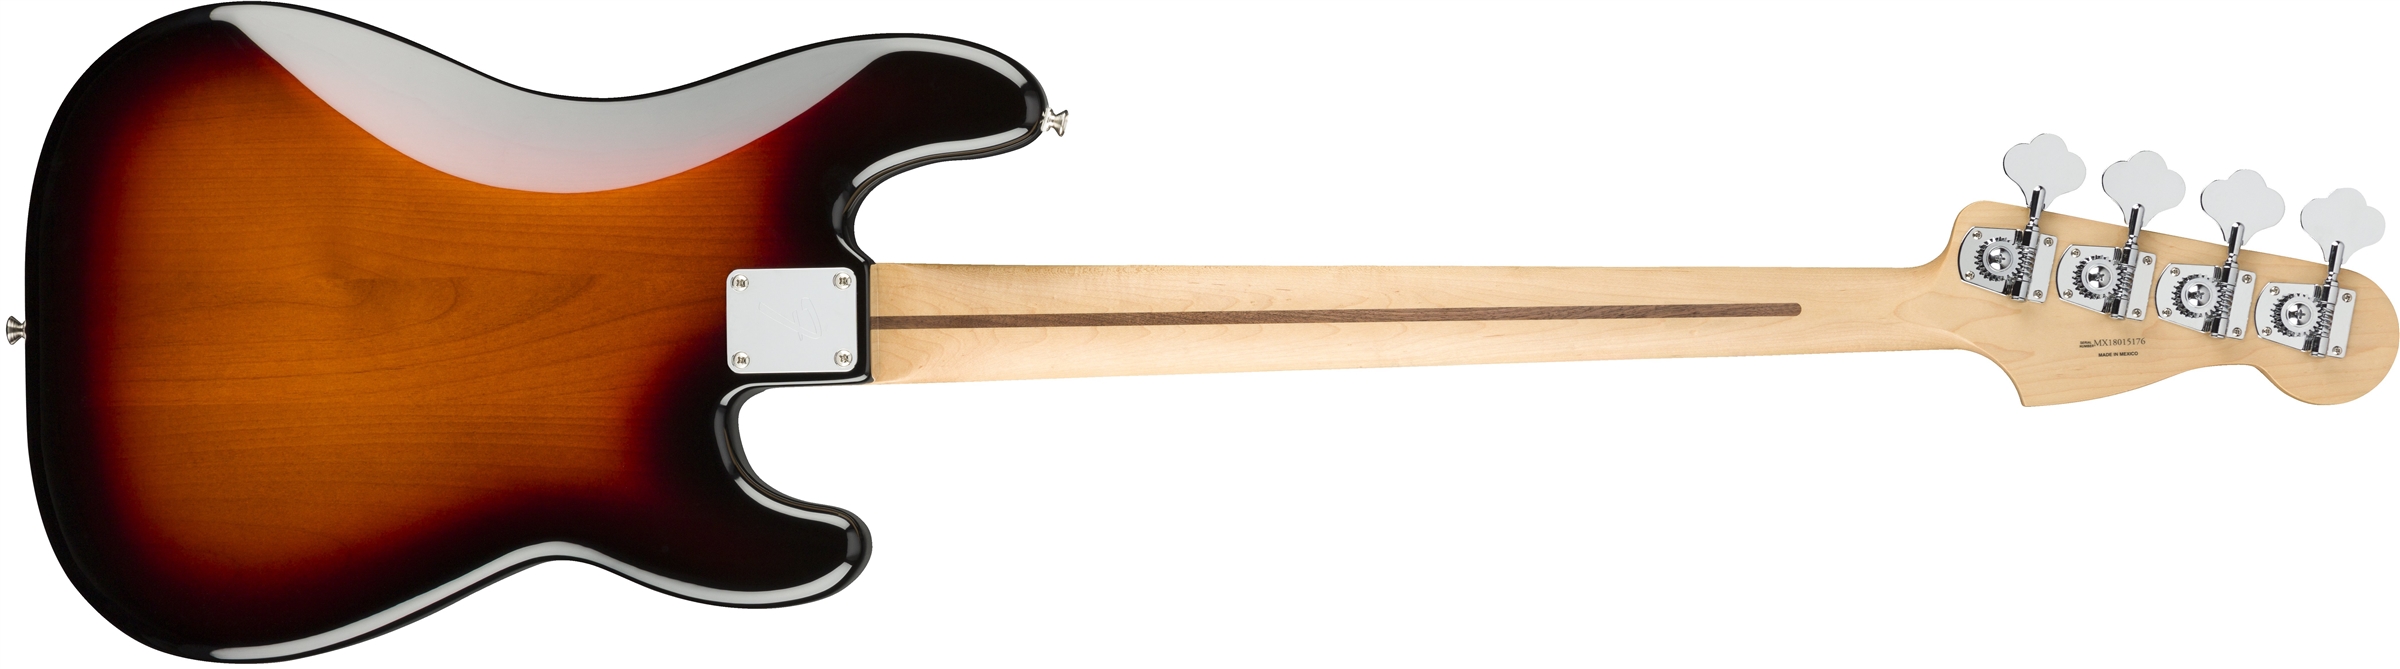 Fender Precision Bass Player Lh Gaucher Mex Pf - 3-color Sunburst - Basse Électrique Solid Body - Variation 1